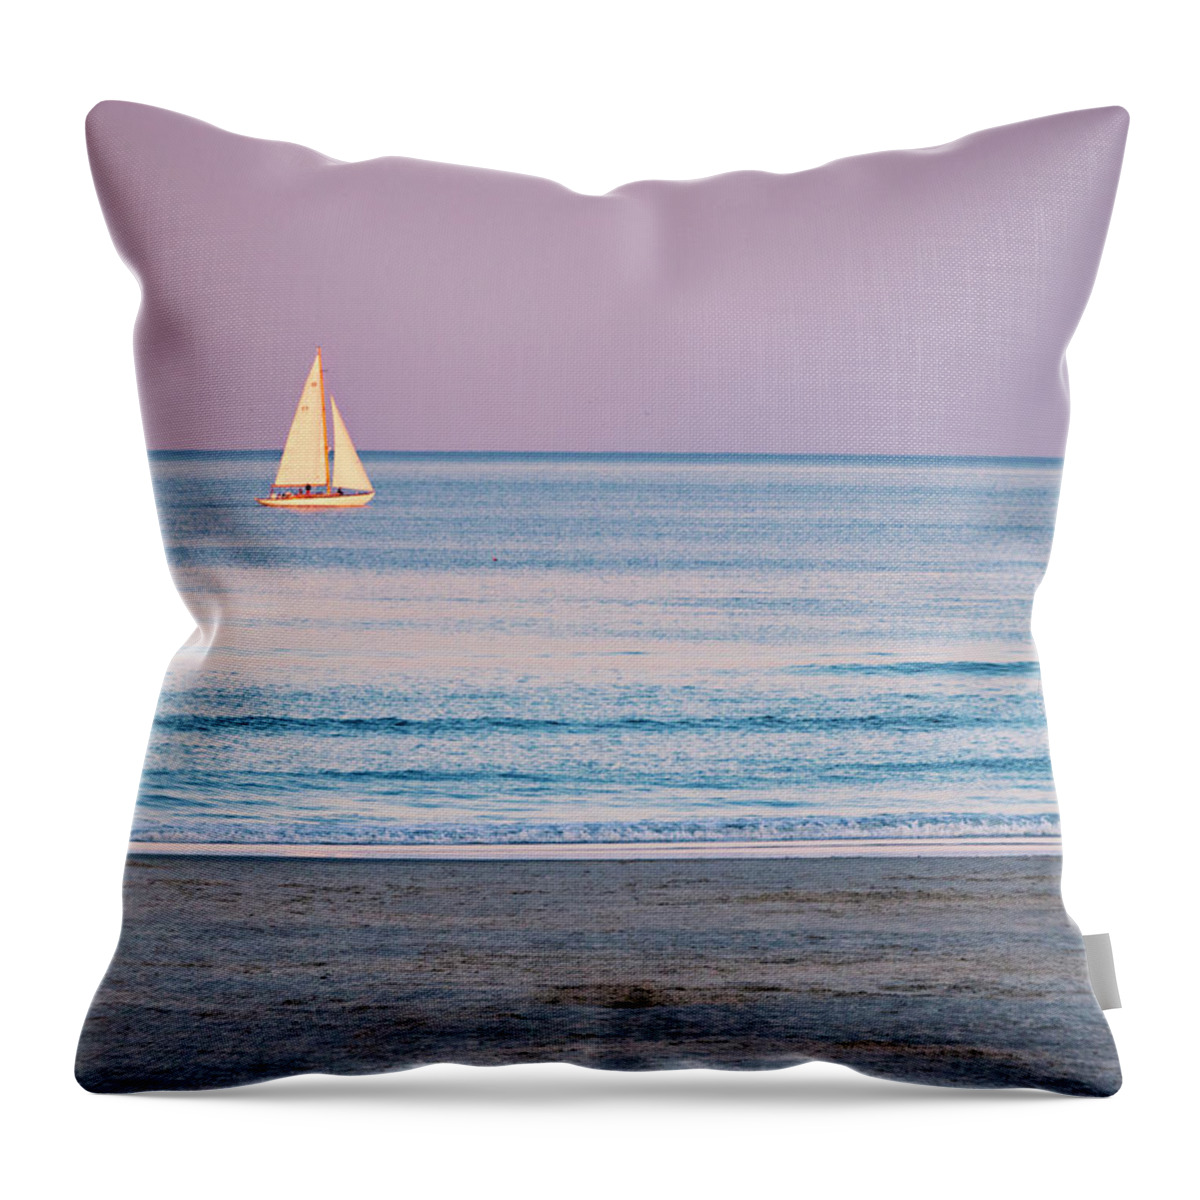 Sail Throw Pillow featuring the photograph Sunset Sail - Ogunquit -Maine by Steven Ralser